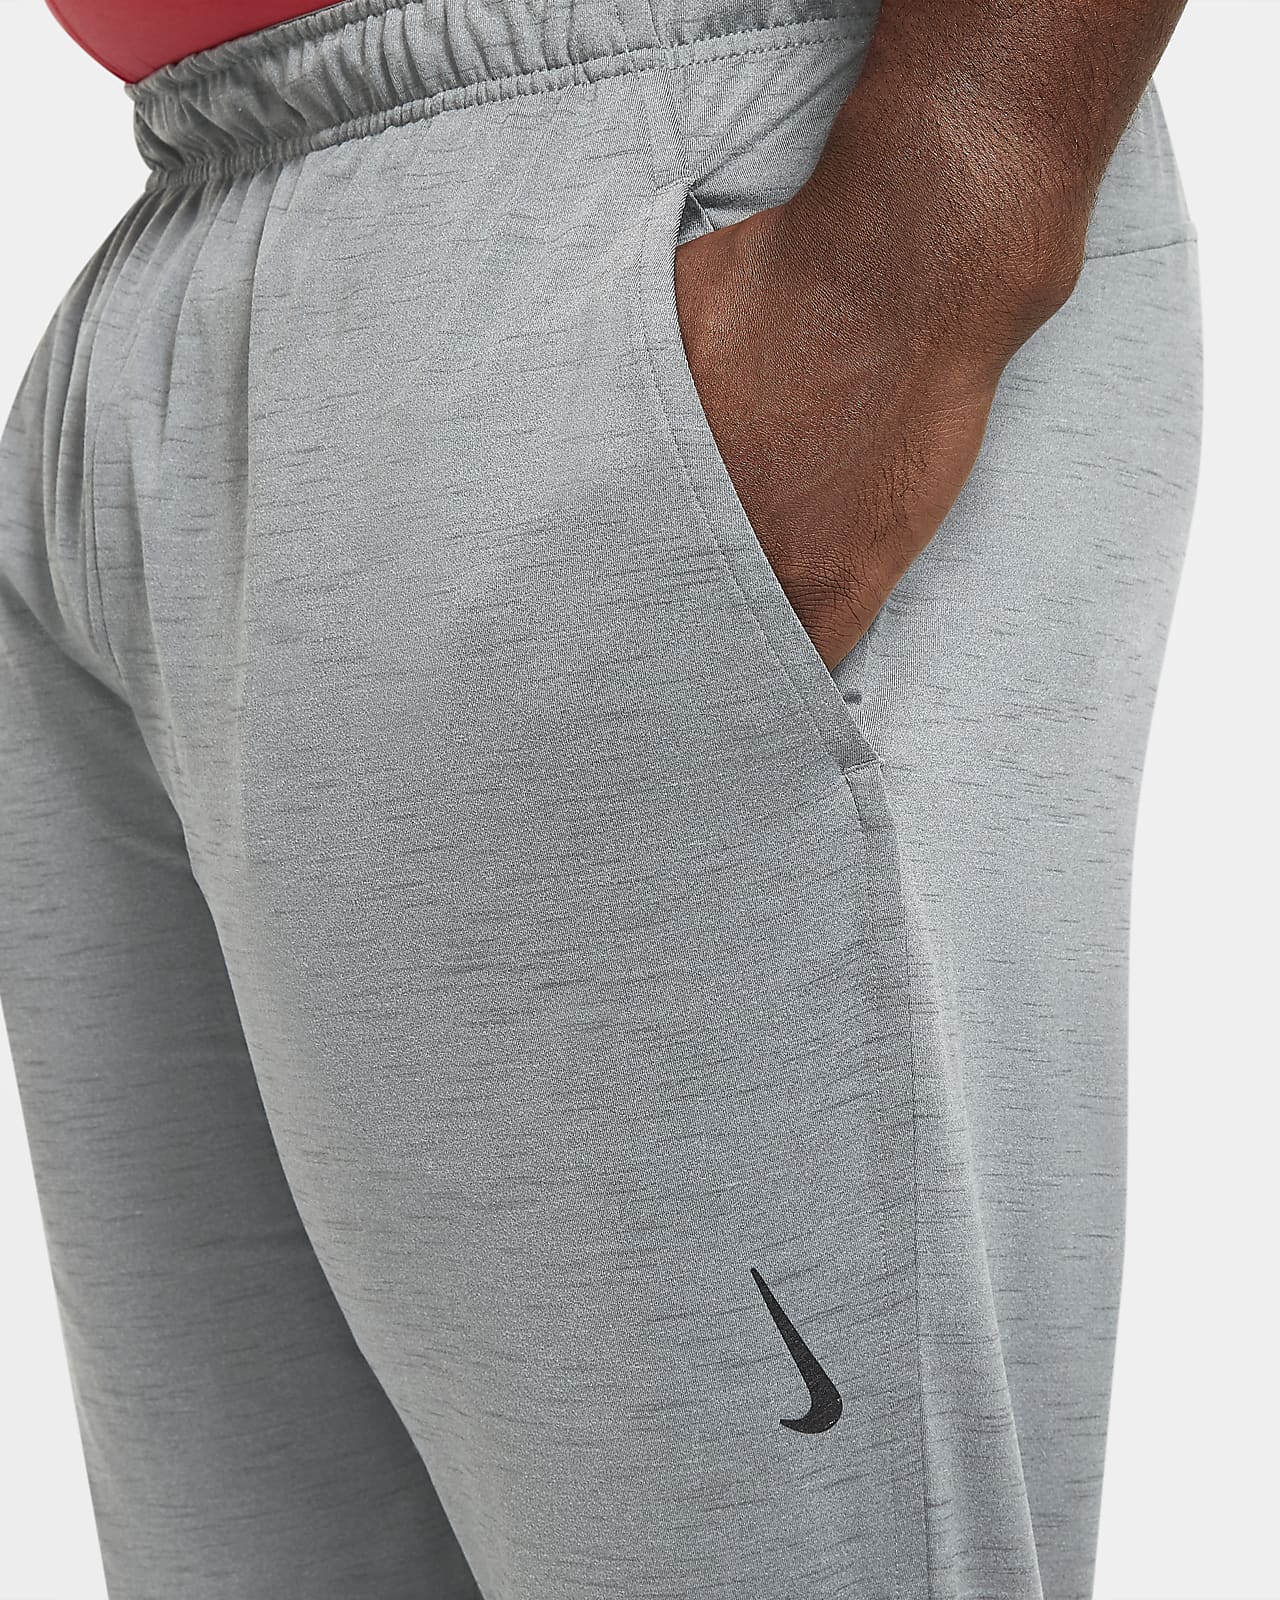 Nike, Yoga Dri-FIT Men's Shorts